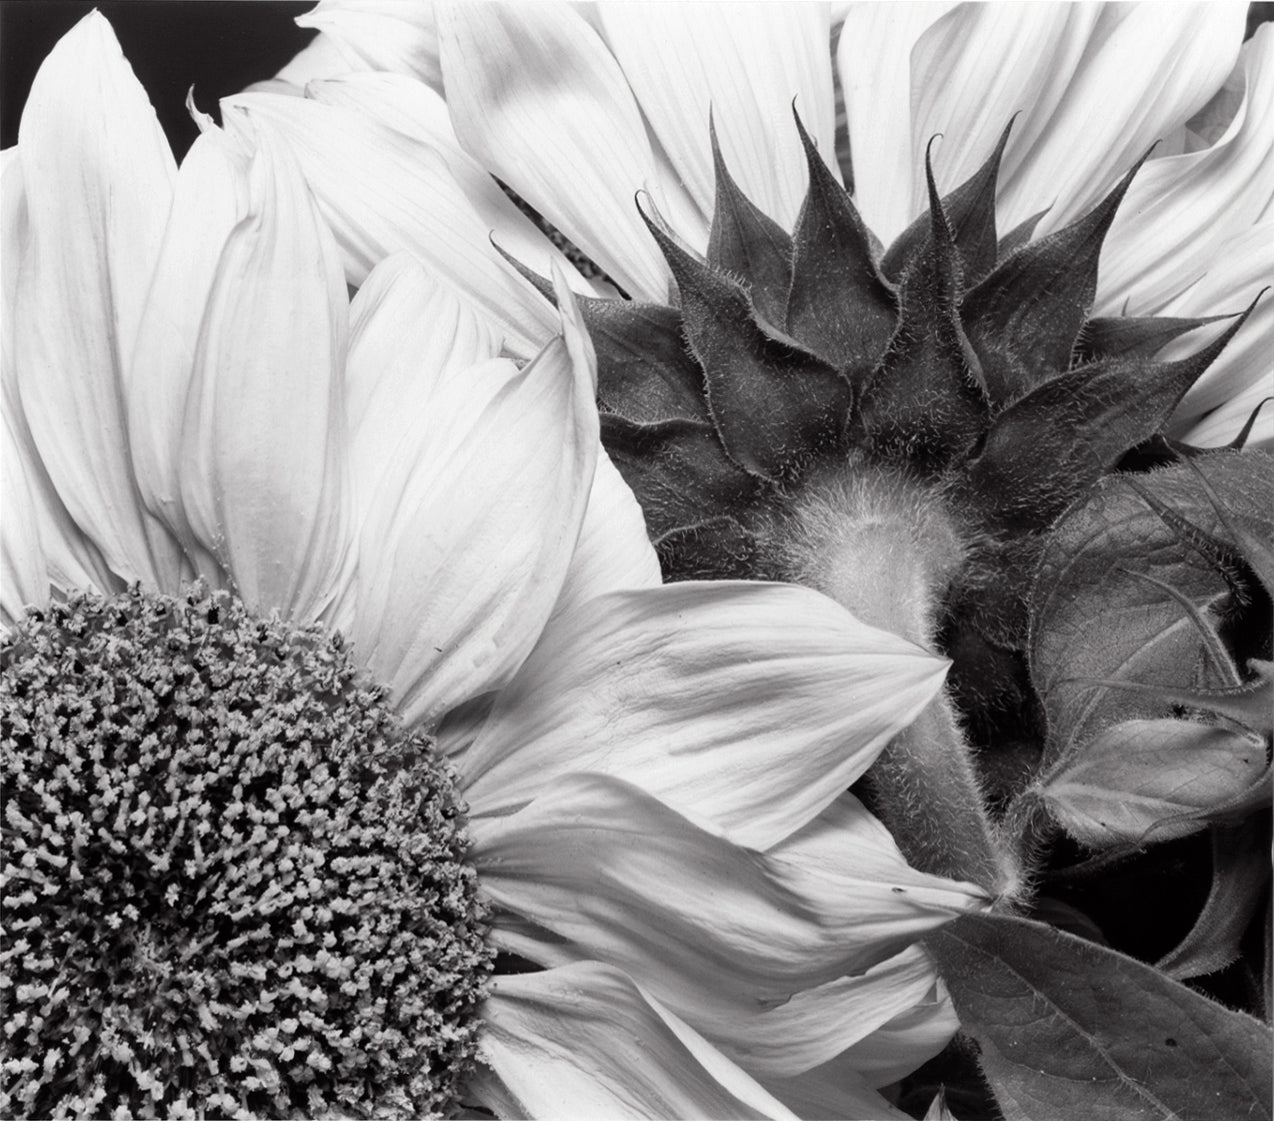 Sunflowers, 2001